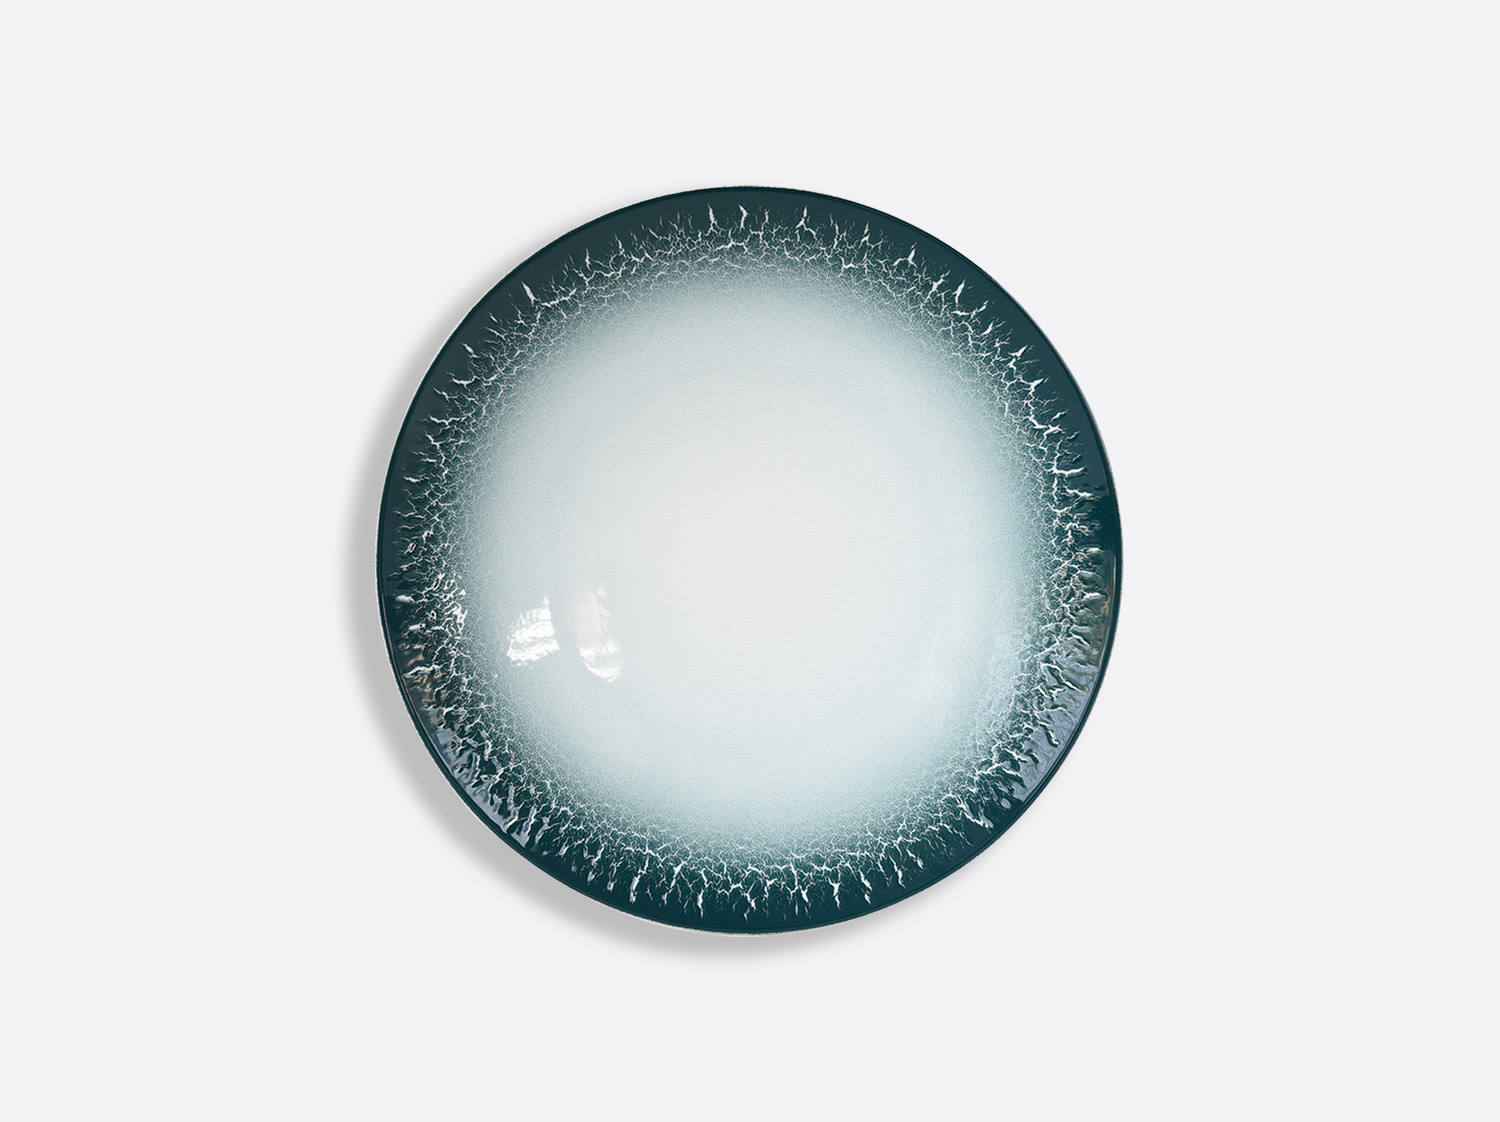 Assiette coupe 16,5 cm en porcelaine de la collection TERRA CALANQUE Bernardaud